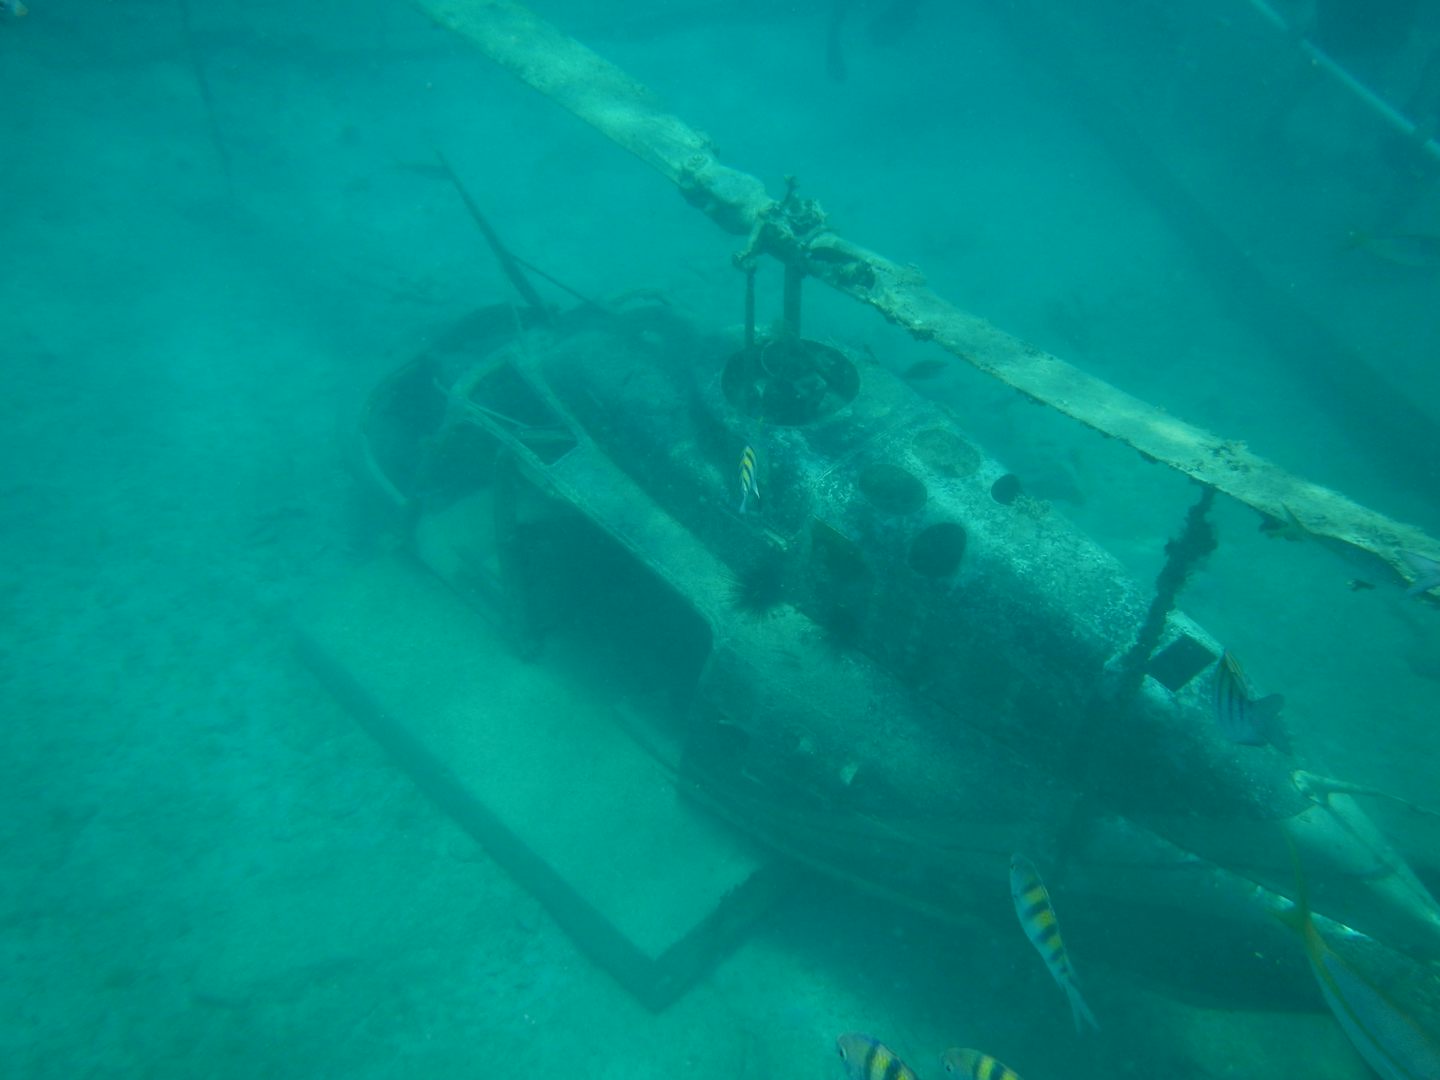 Underwater helicopter wreck in St. Maarten.